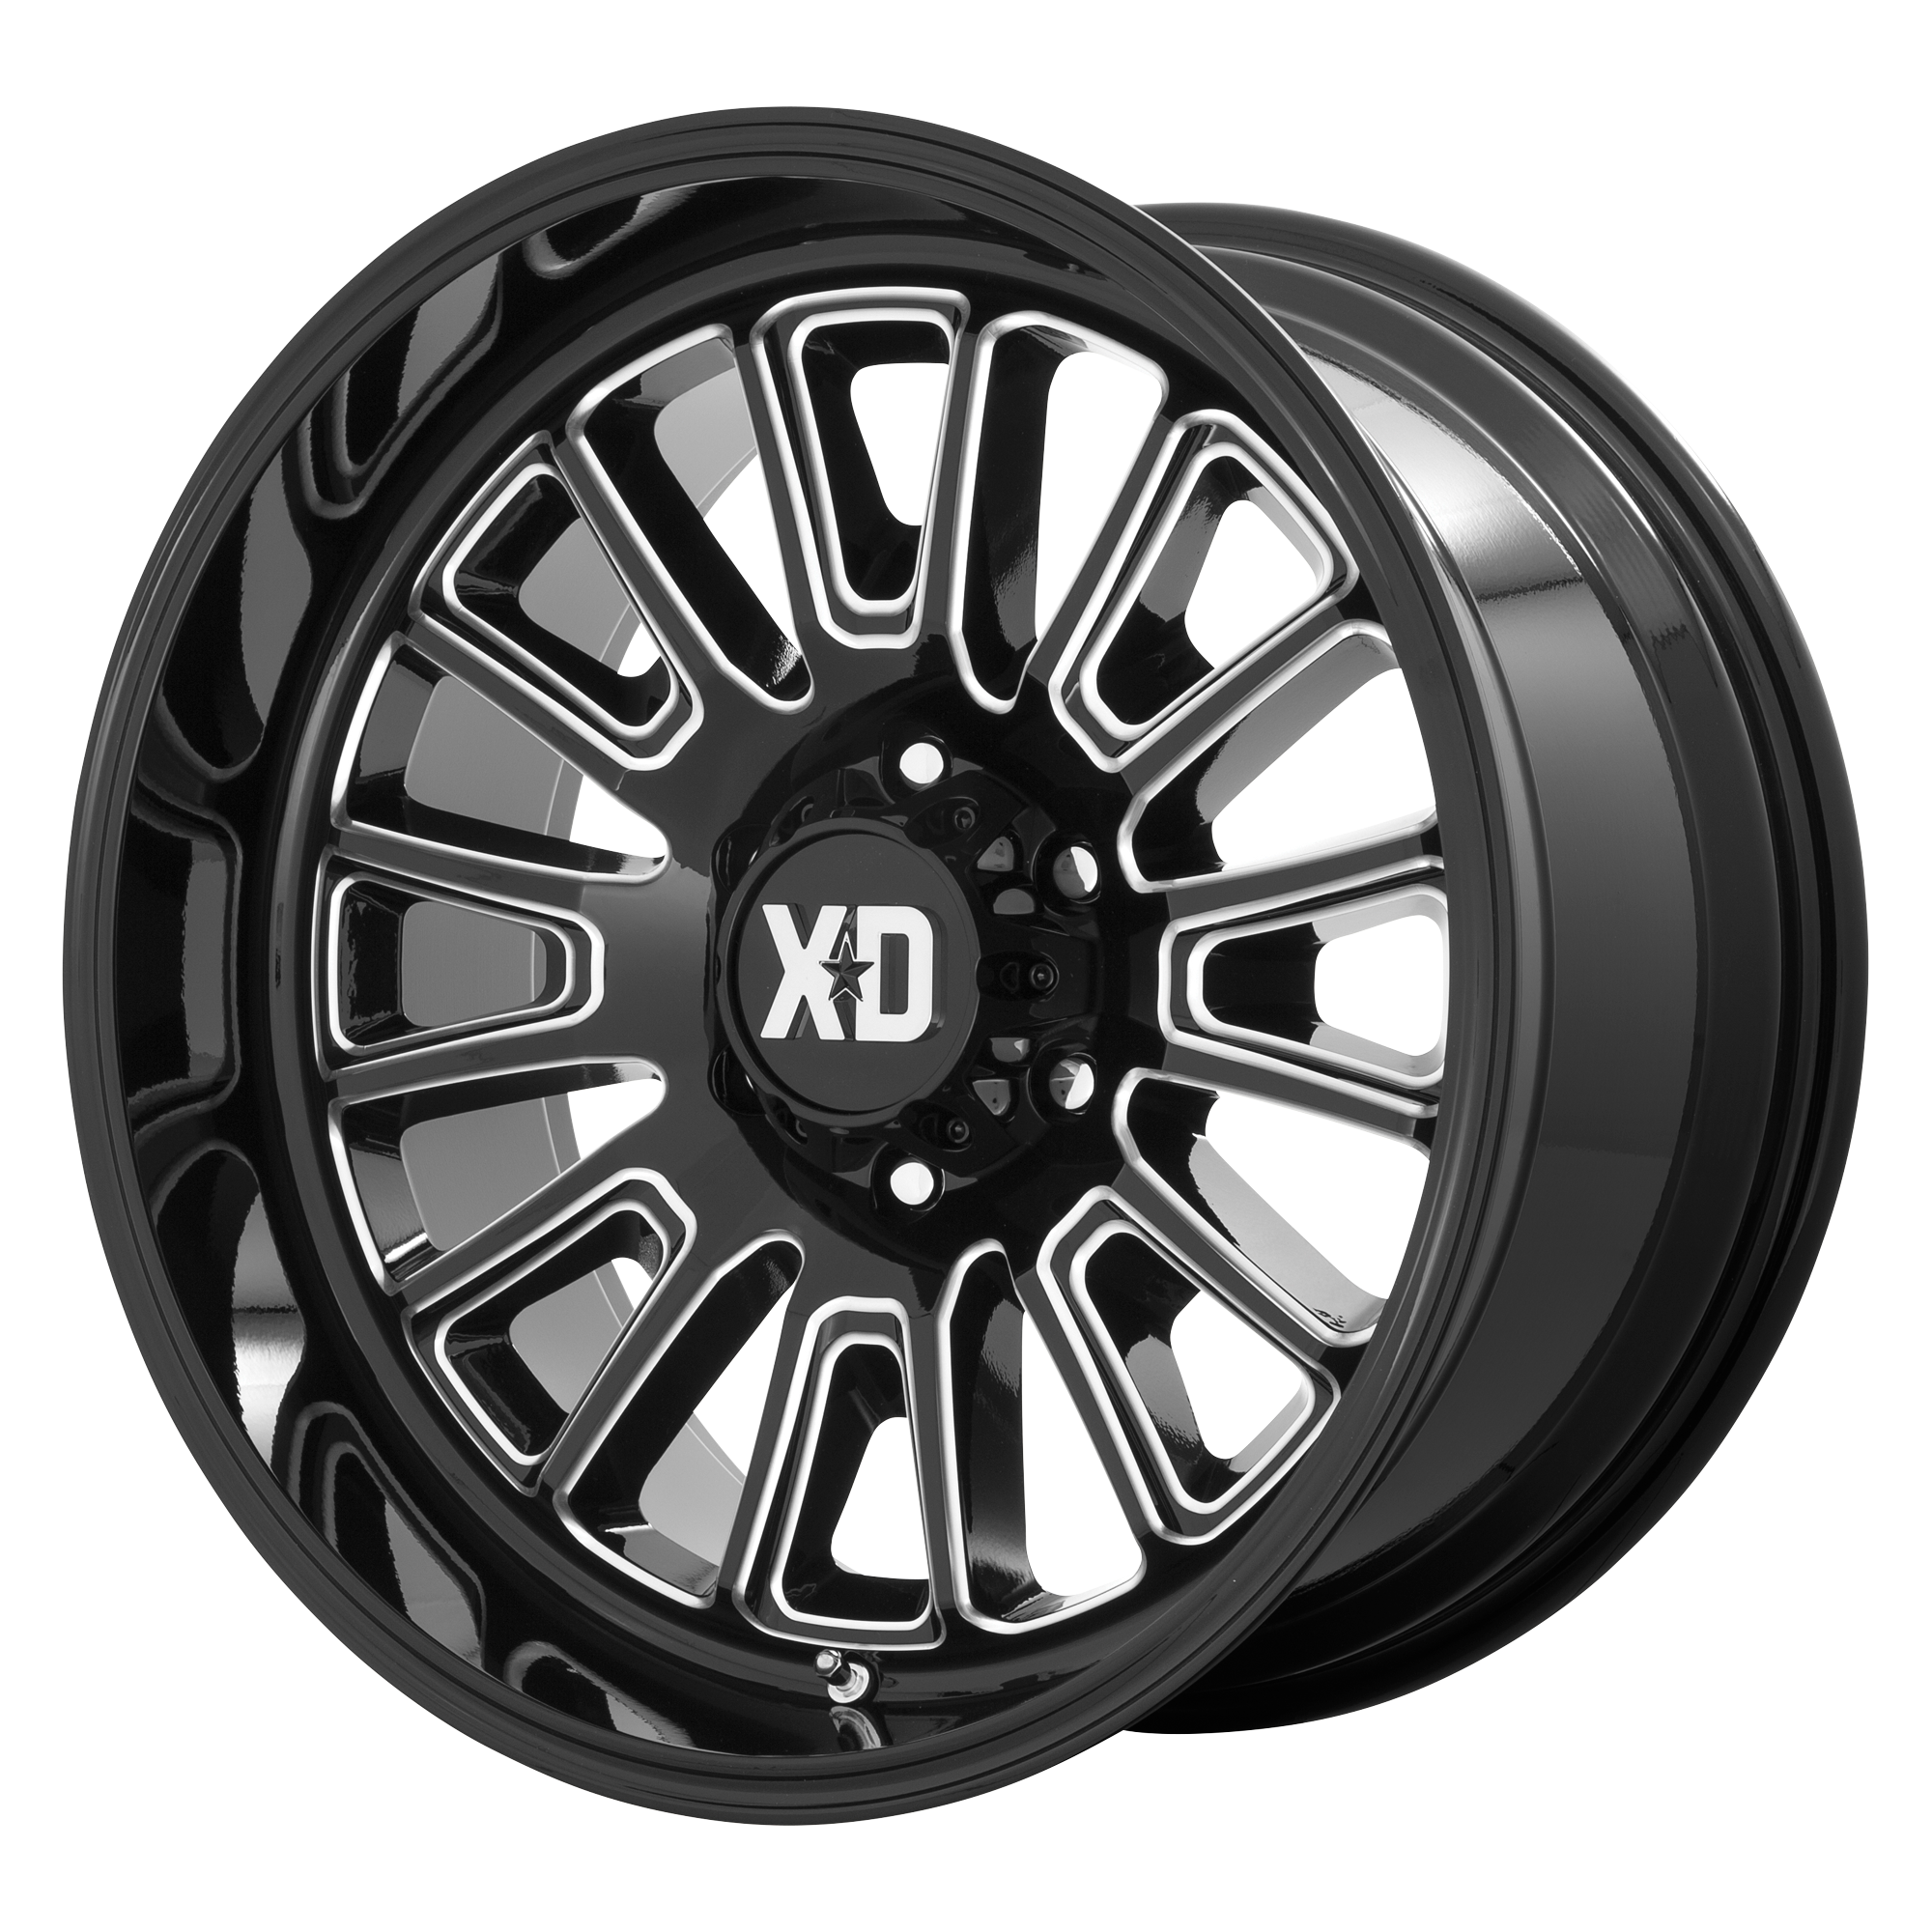 XD 20"x10" Non-Chrome Gloss Black Milled Custom Wheel ARSWCWXD86421087318N